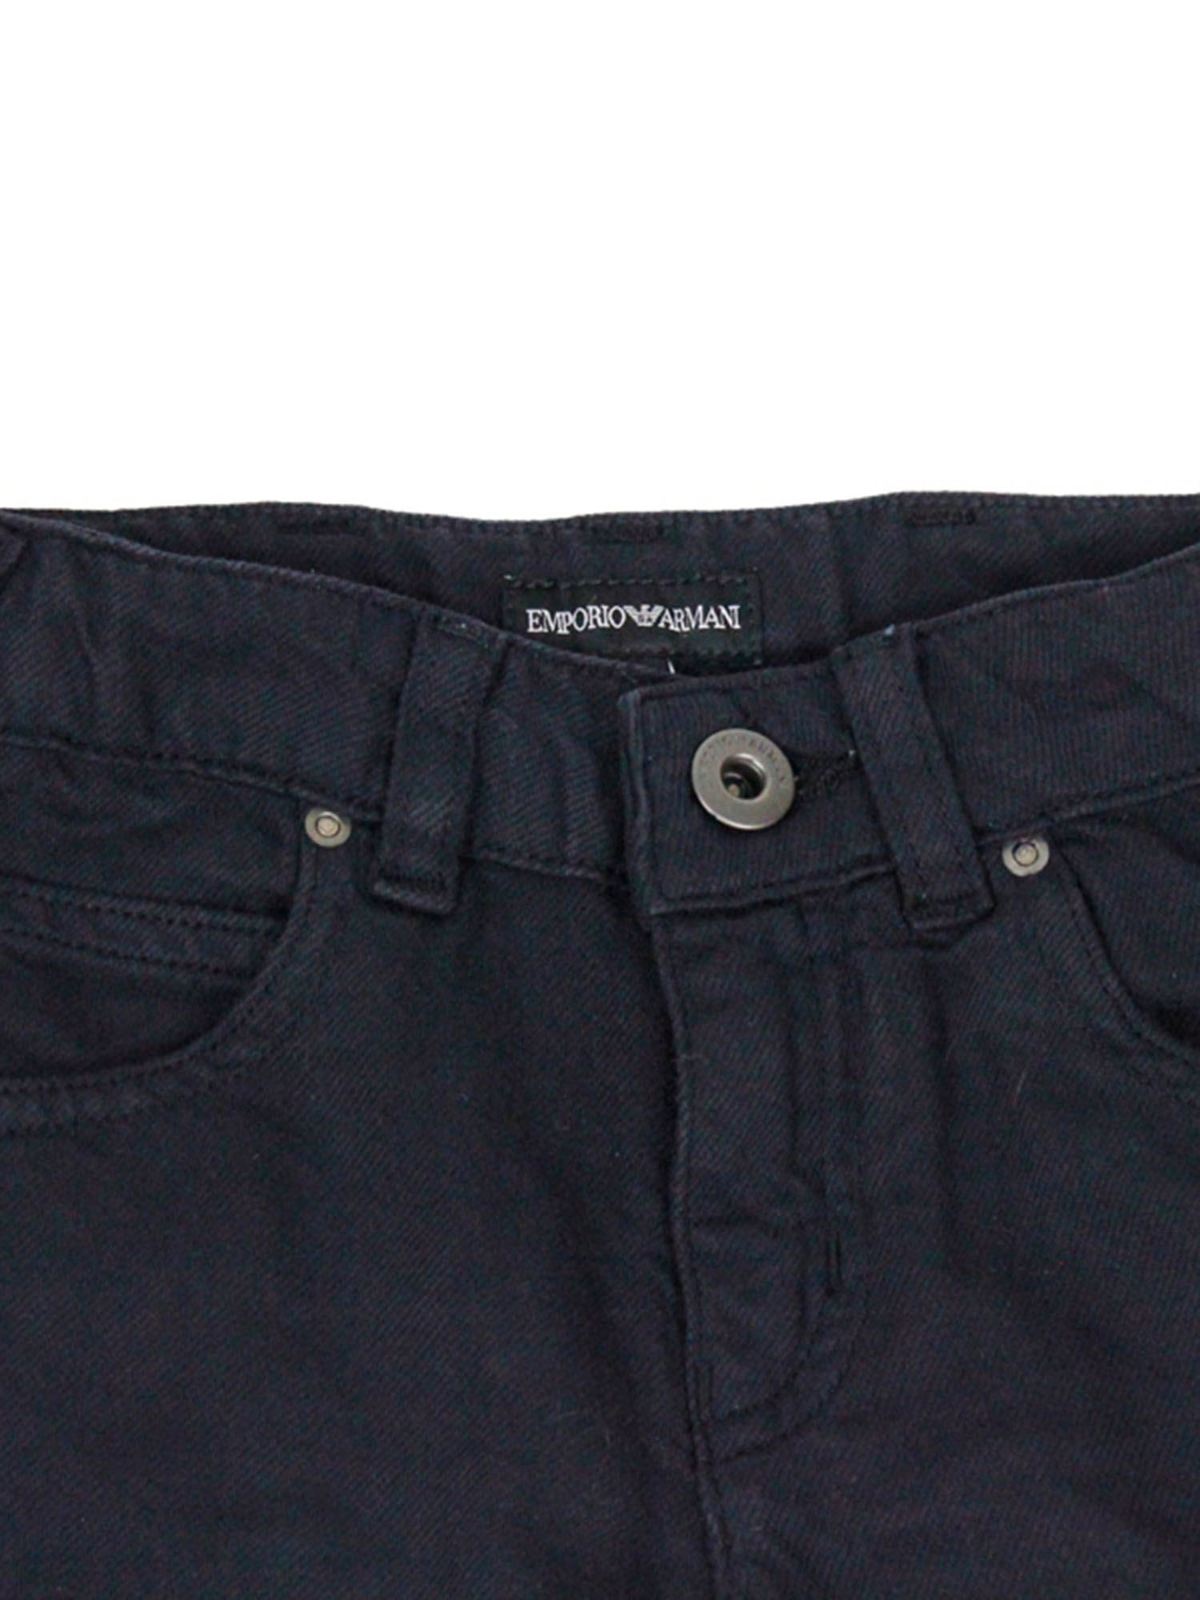 Jeans Emporio Armani - Emporio Armani straight jeans in blue - 3K4J453N4FZ0920